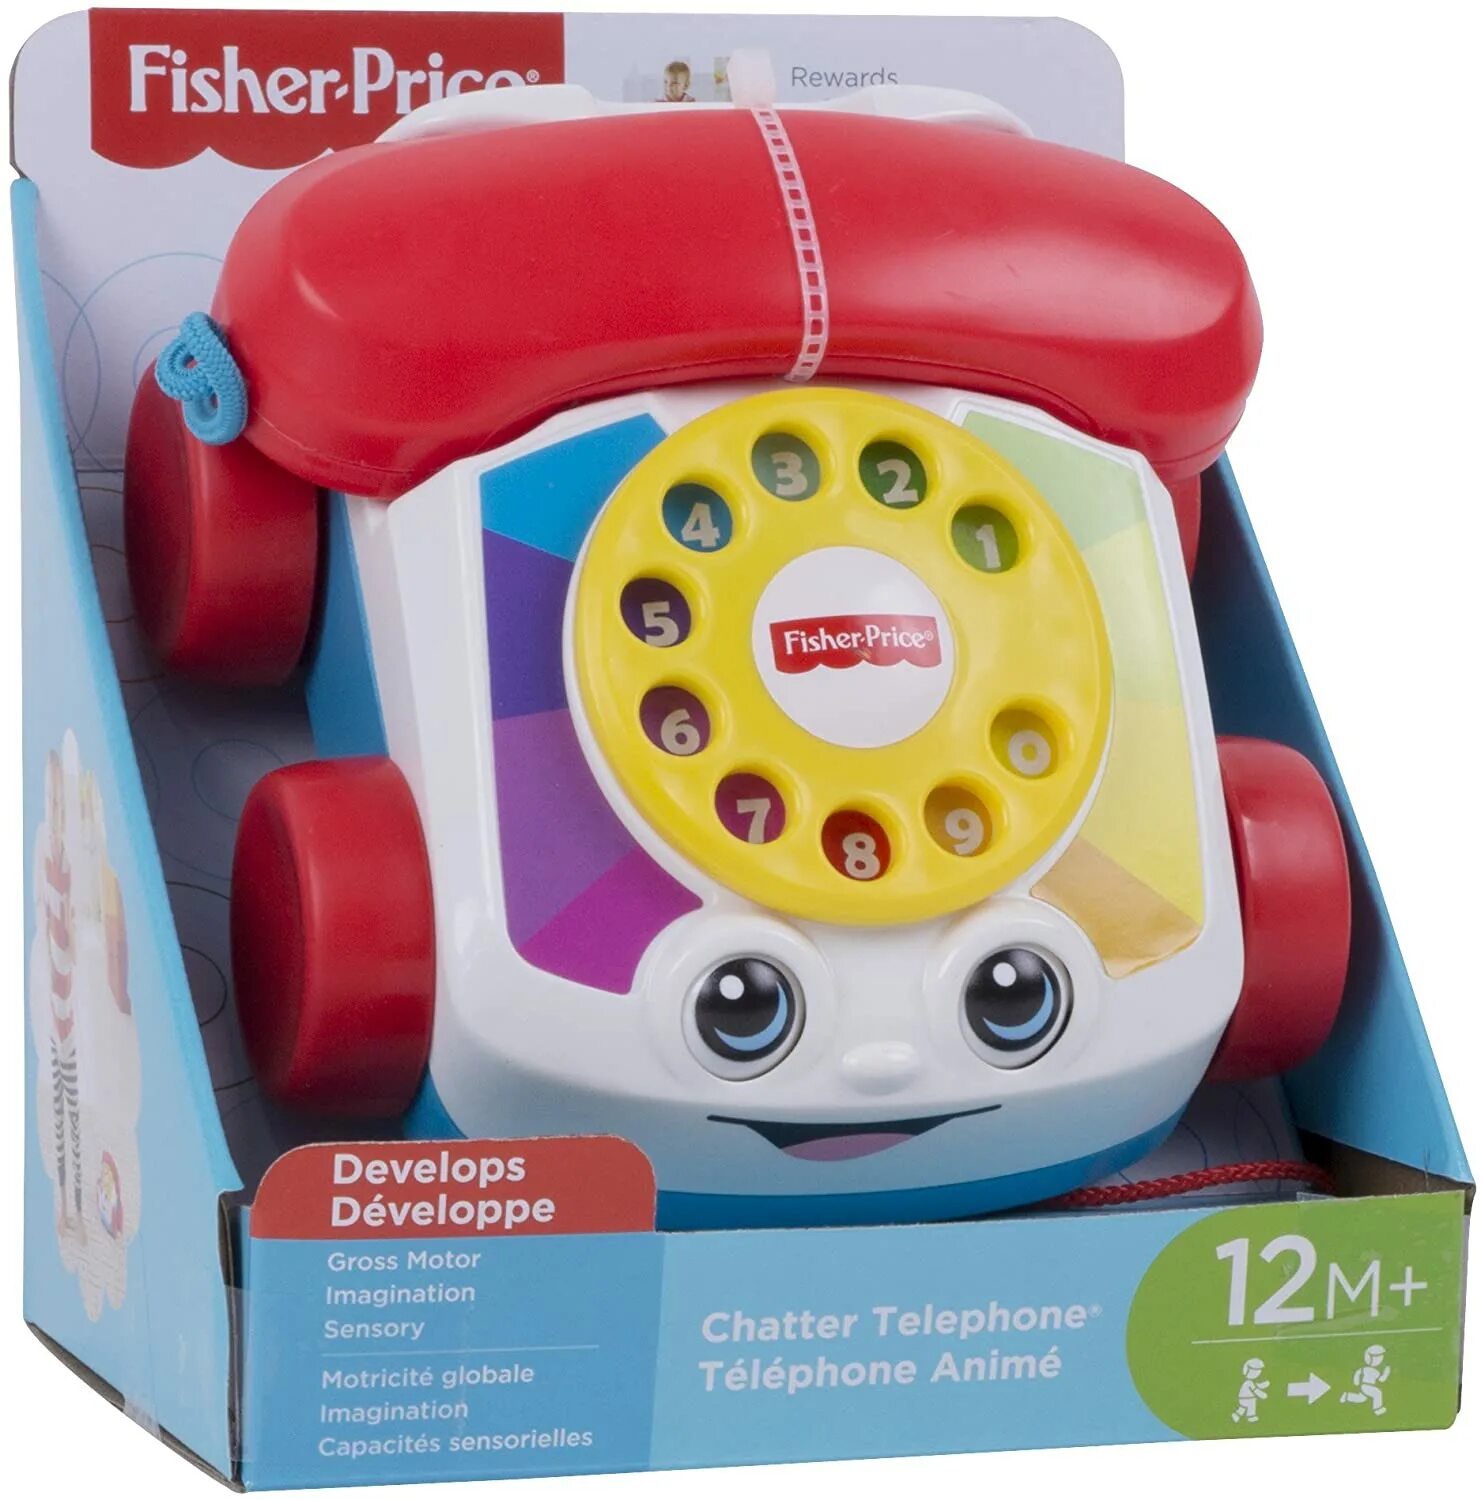 Телефончик Fisher Price. Игрушка "телефон". Умный телефон игрушка Fisher Price. Детский стационарный телефон игрушка. 0 12 телефон